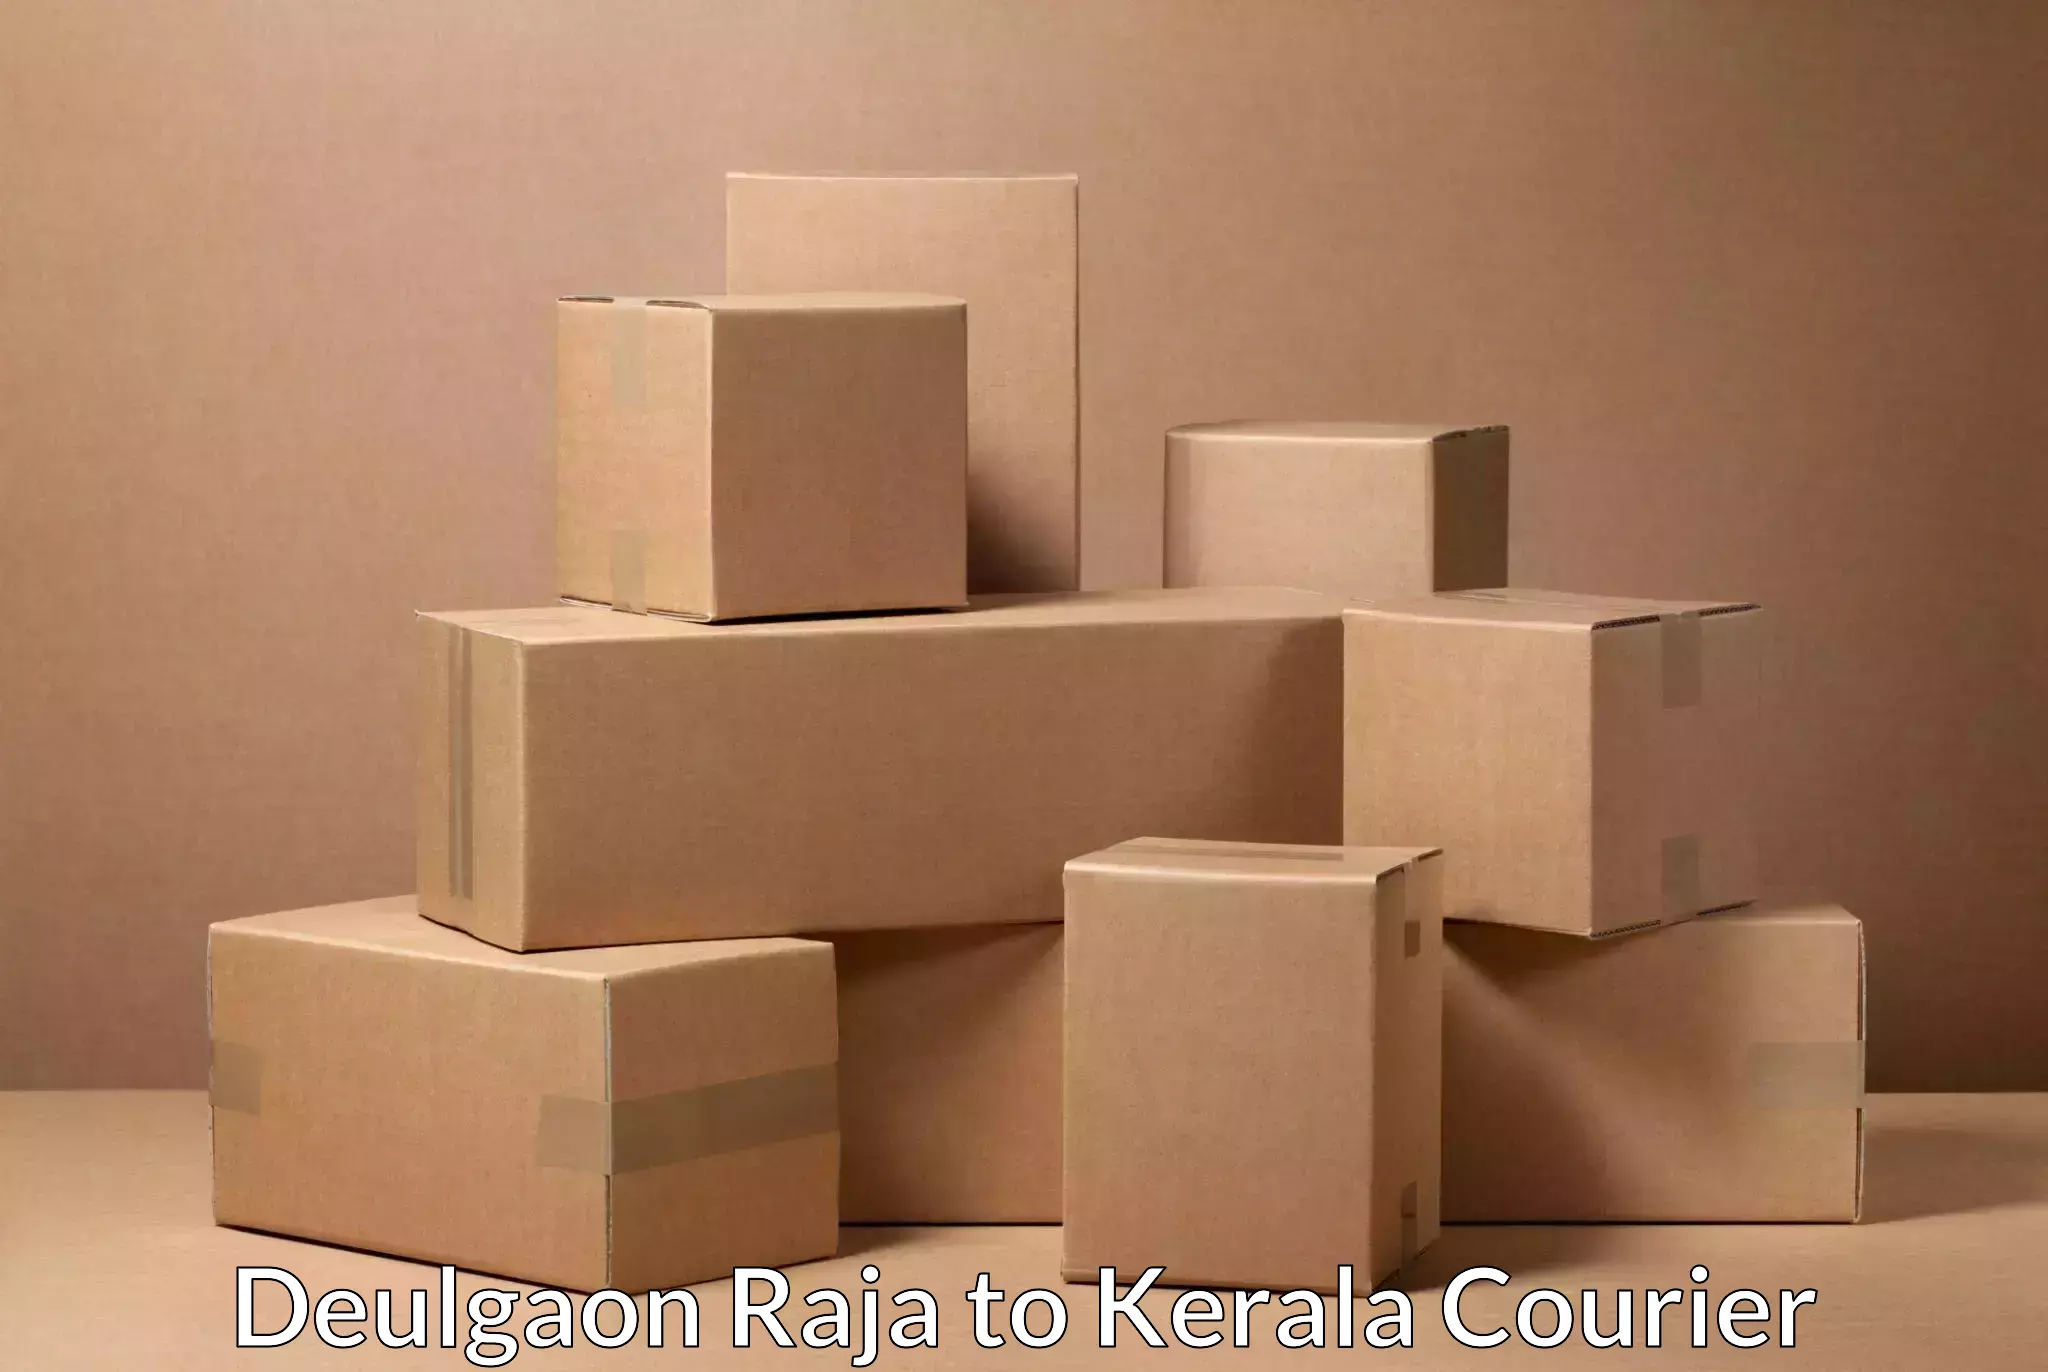 Automated parcel services Deulgaon Raja to Kadanad